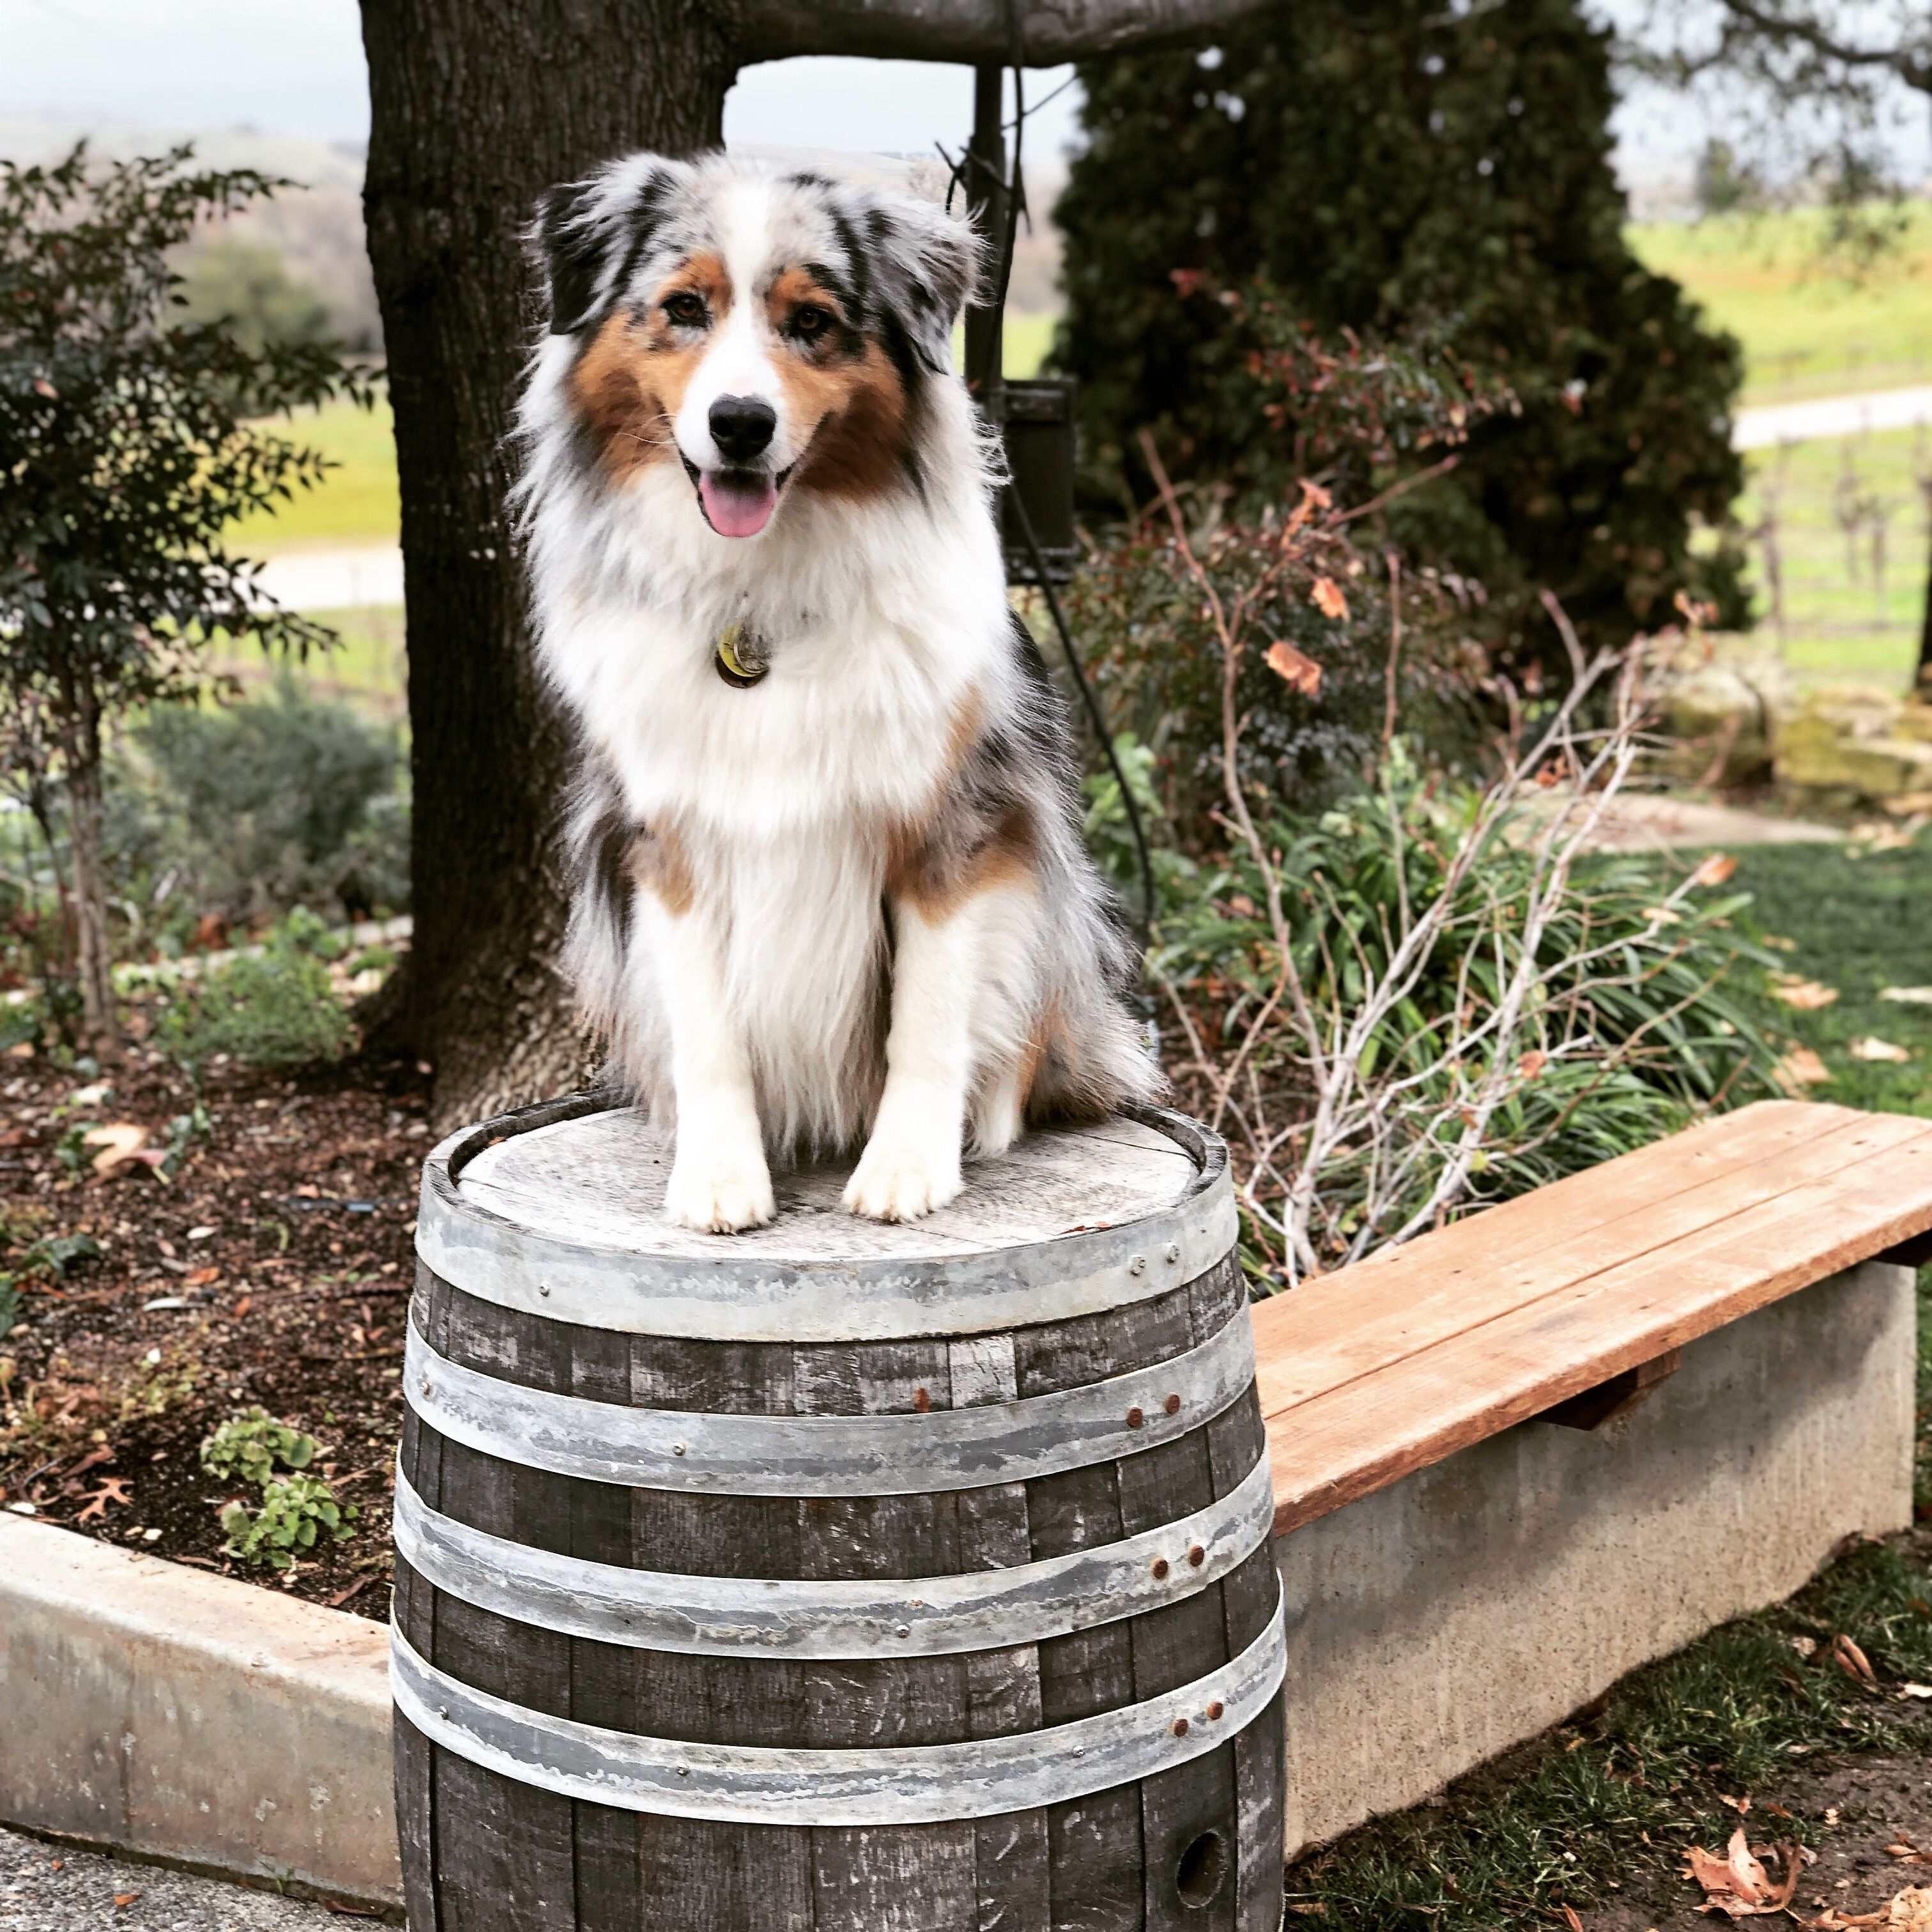 A handsome Australian Shepherd dog sitting on a wine barrel in a garden